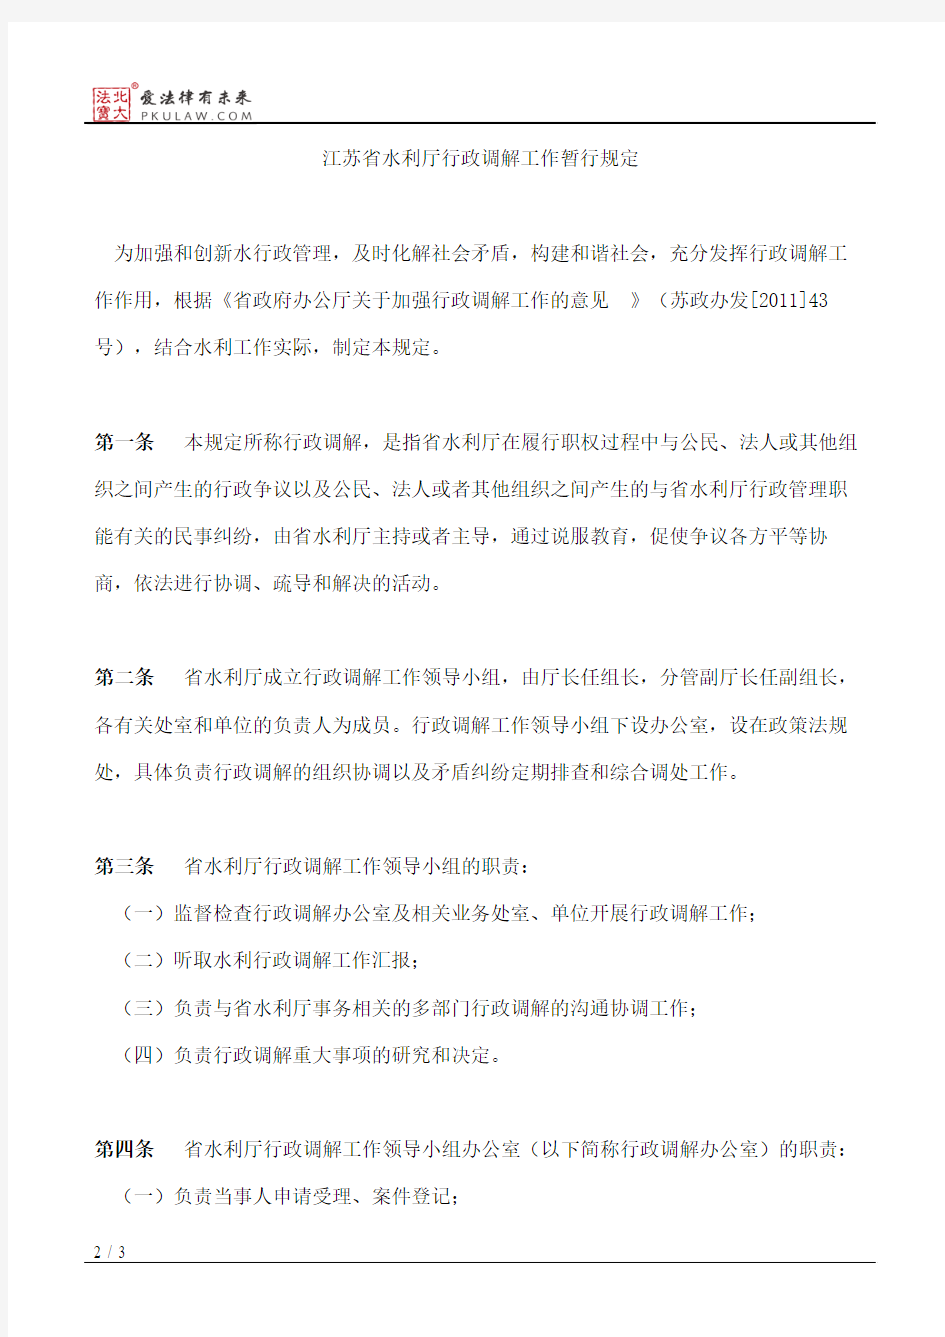 江苏省水利厅关于发布《江苏省水利厅行政调解工作暂行规定》的通告